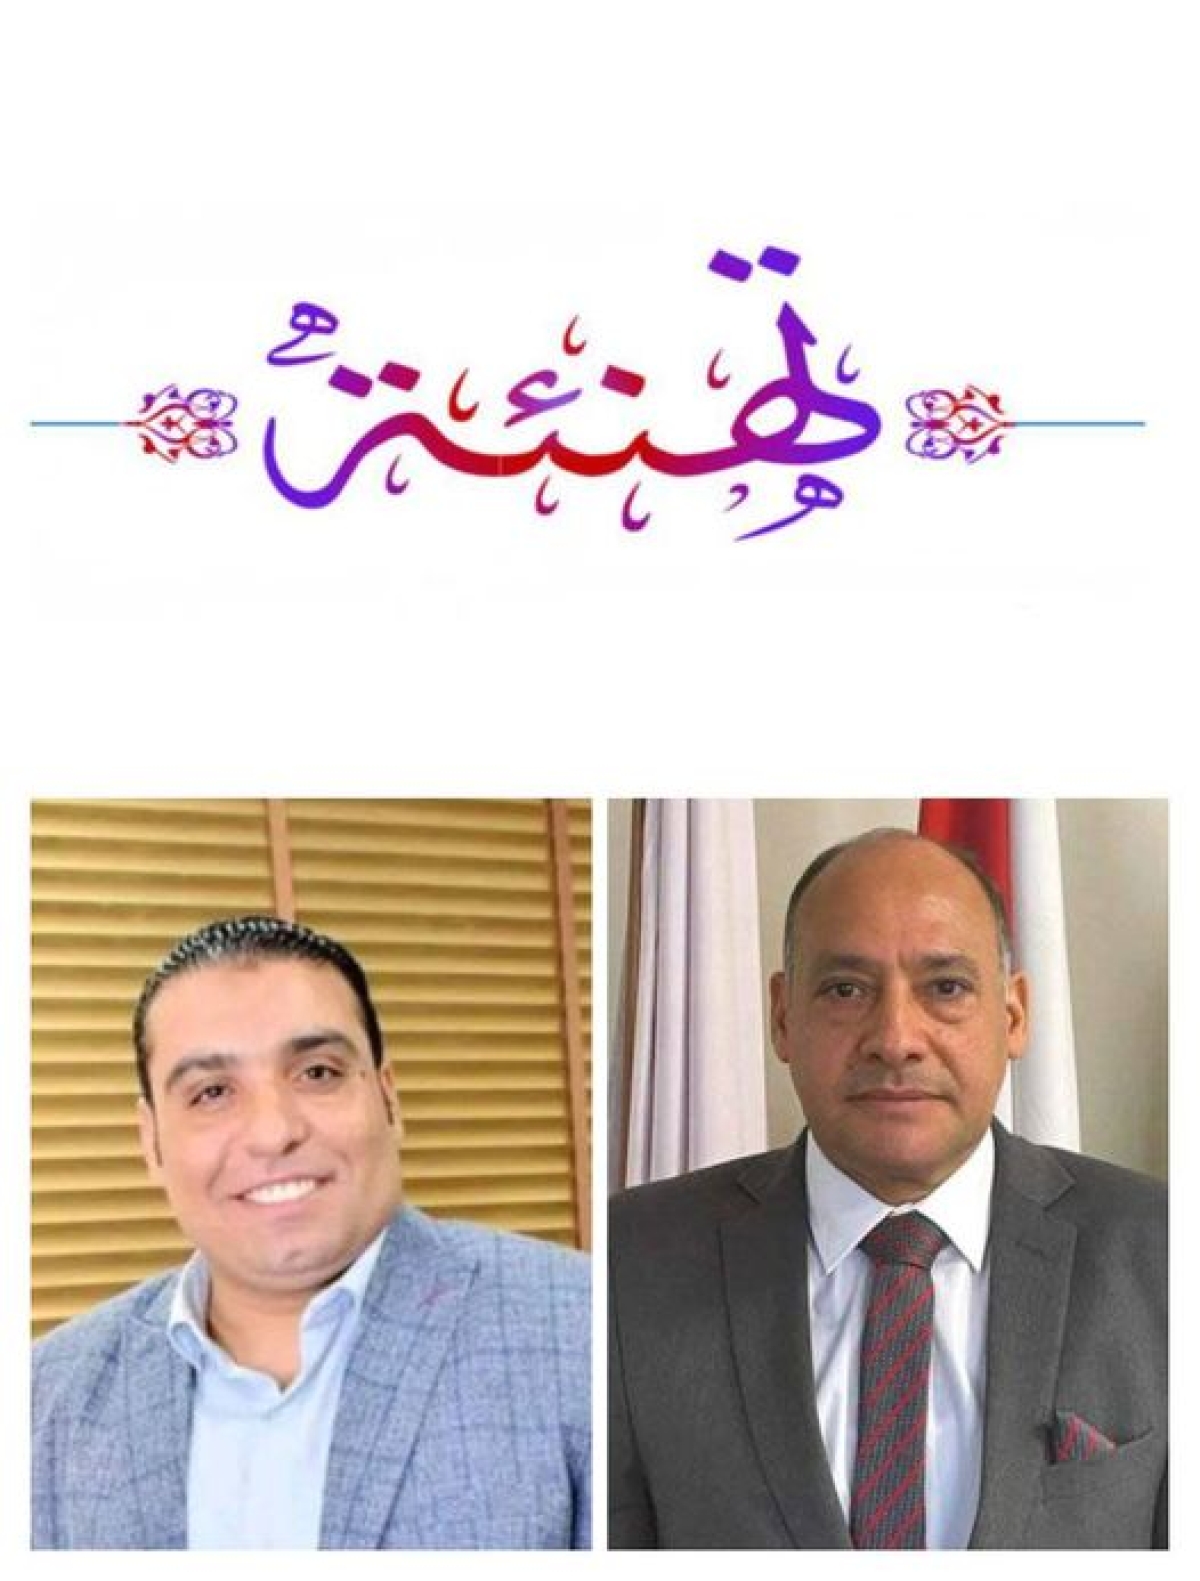 الدكتور/ محمد لبيب الفقى لتوليه منصب مخطط أحمال منتخب مصر للكاراتية